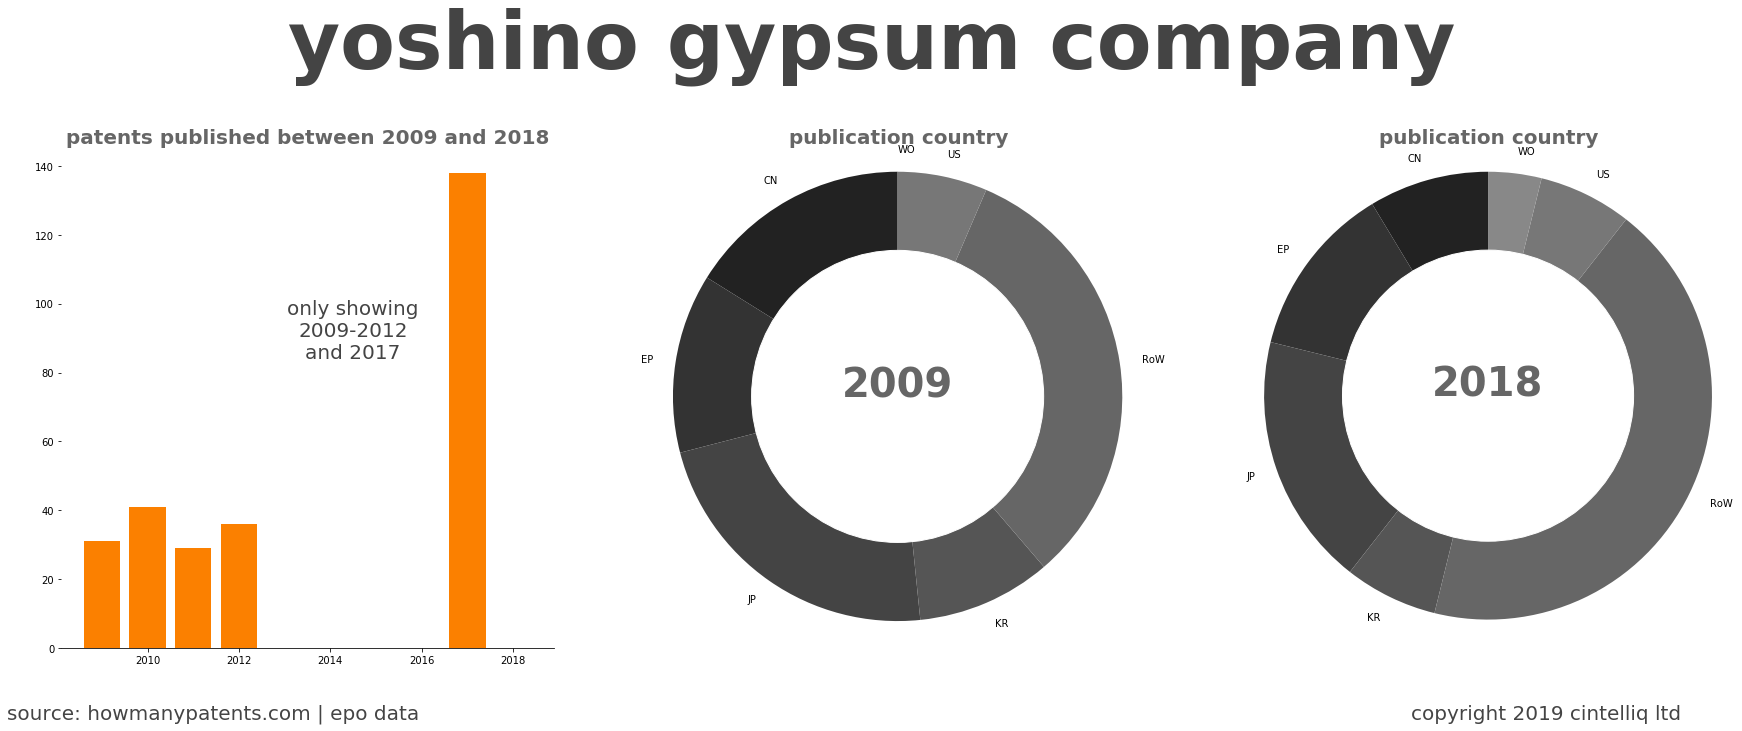 summary of patents for Yoshino Gypsum Company